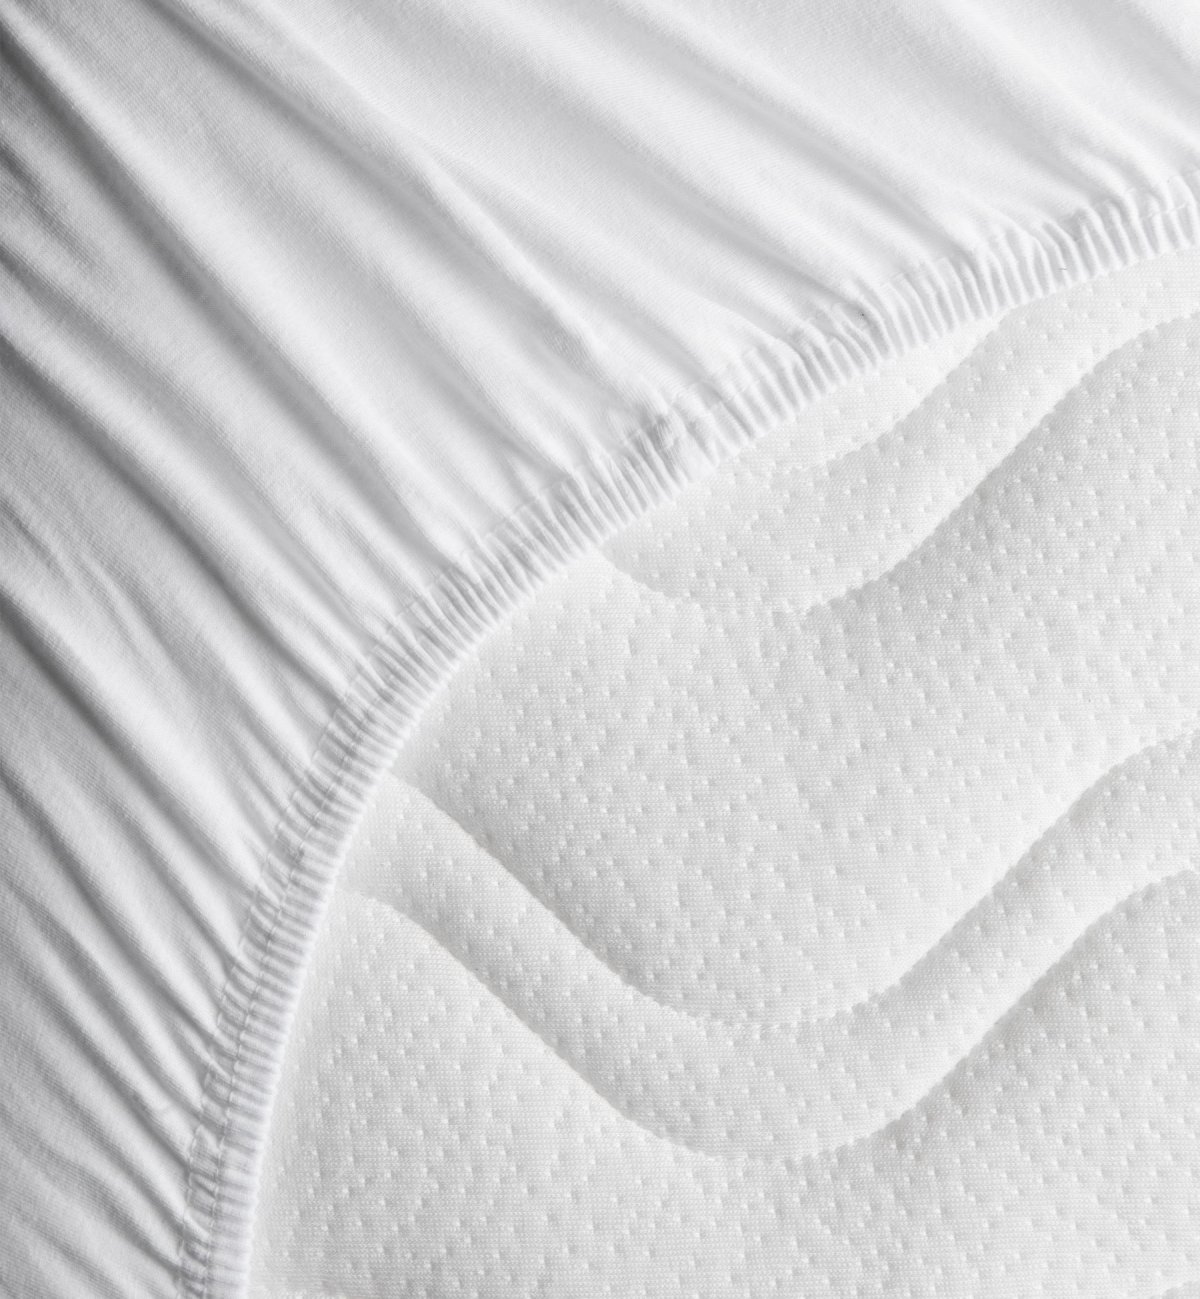 Organic Cotton baby sheet for crib mattress - Kadolis